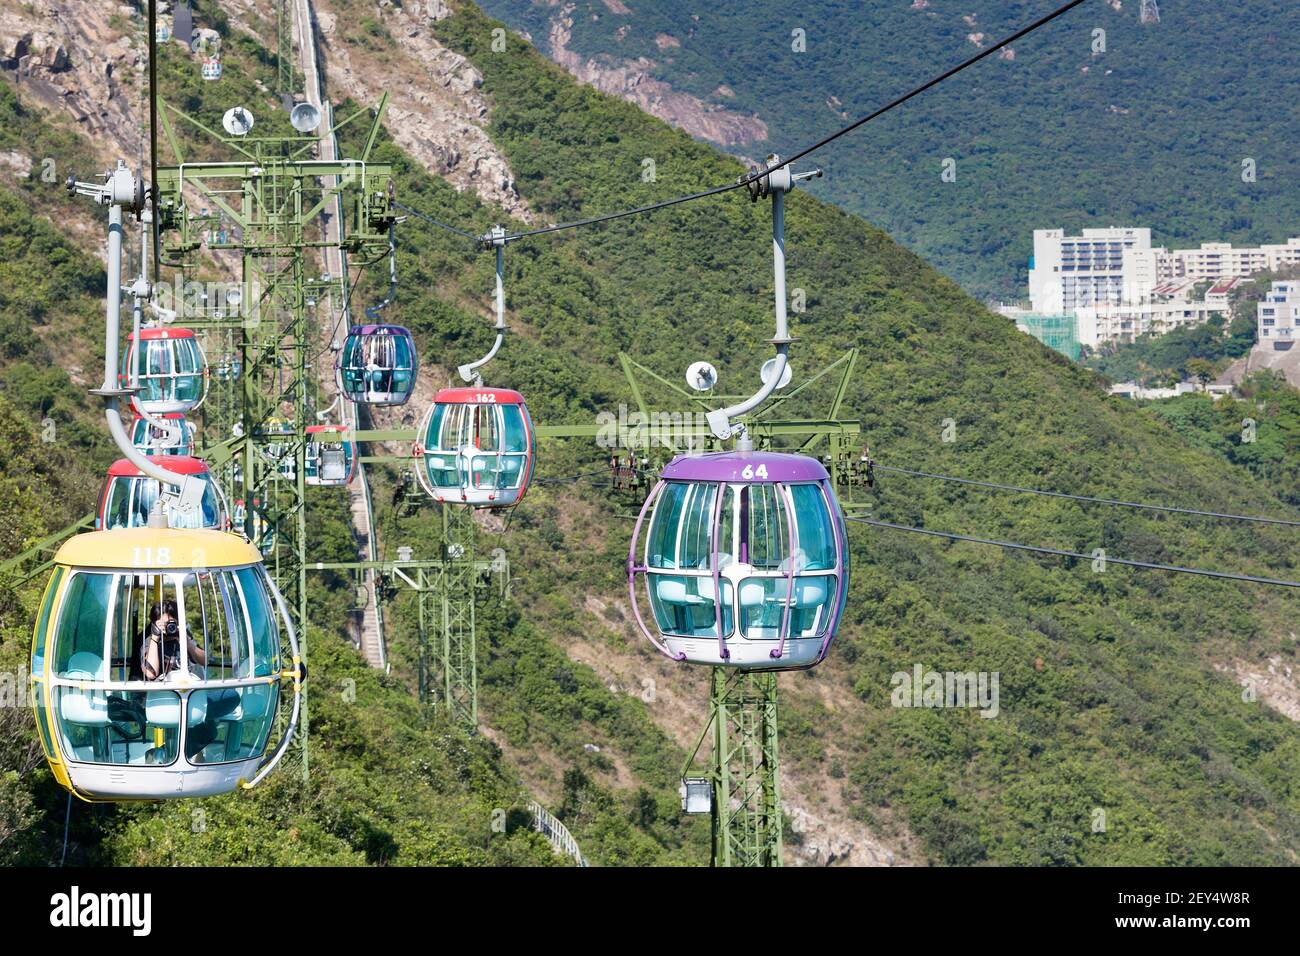 Hong Kong island, China, Asia - Cablecar at Ocean Park amusement park in Hong Kong island. Stock Photo